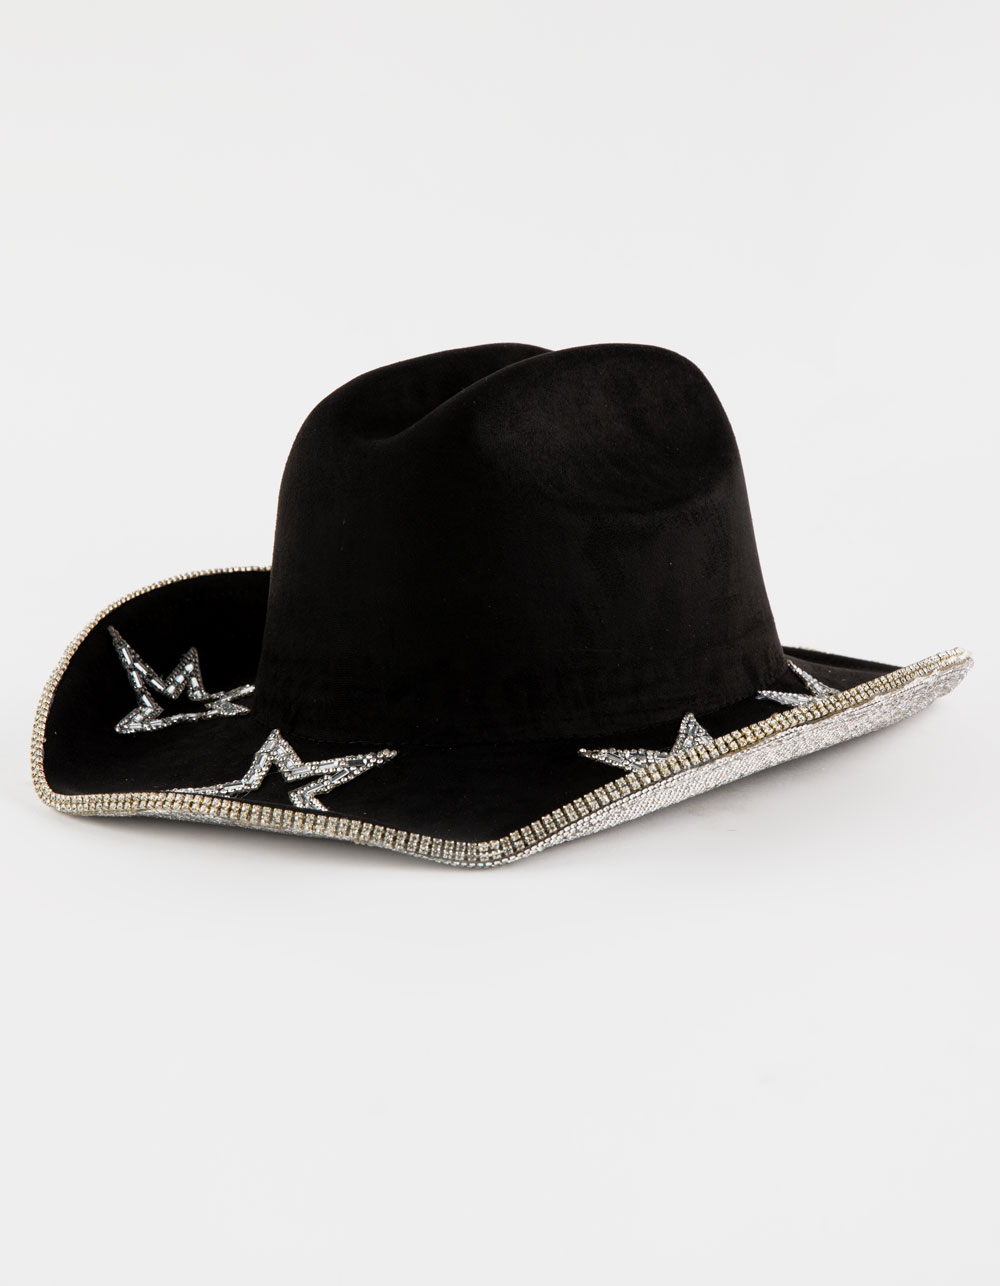 Star Rhinestone Womens Cowboy Hat